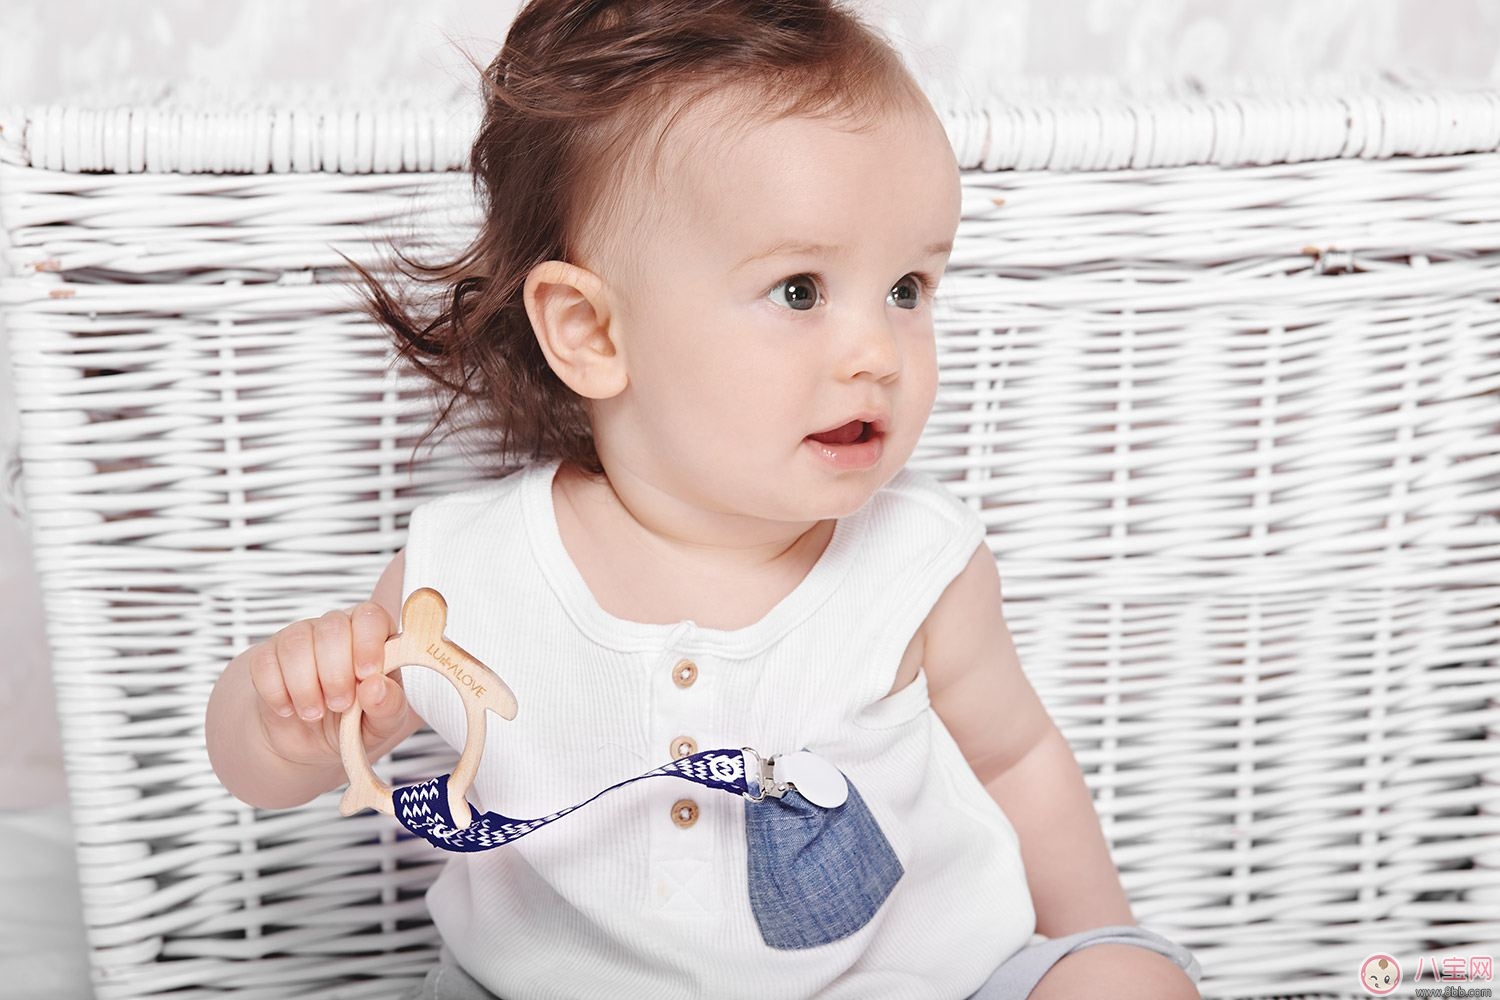 磨牙棒适合多大的宝宝用 如何选择宝宝的磨牙棒